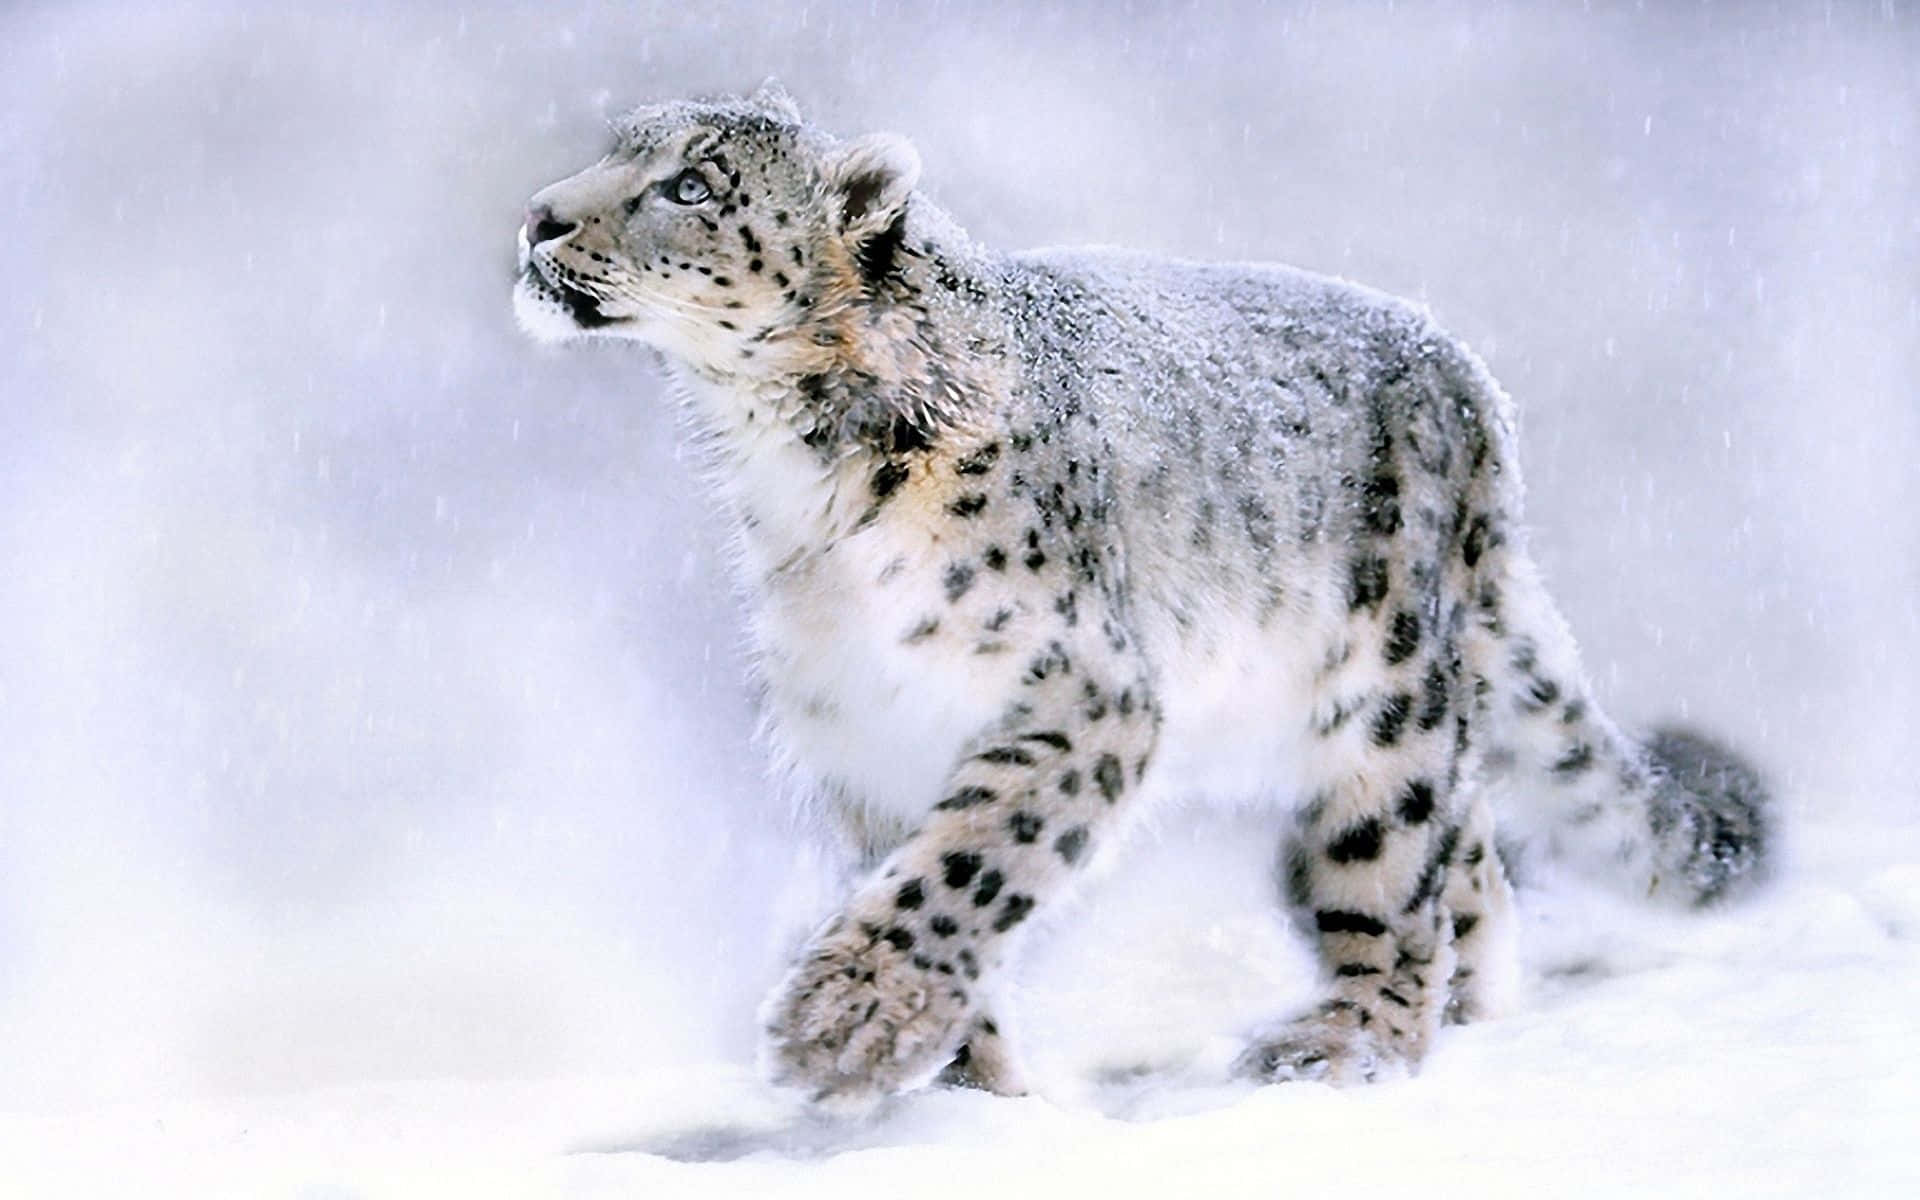 Ummajestoso Leopardo Da Neve Descansando Em Uma Rocha Saliente. Papel de Parede